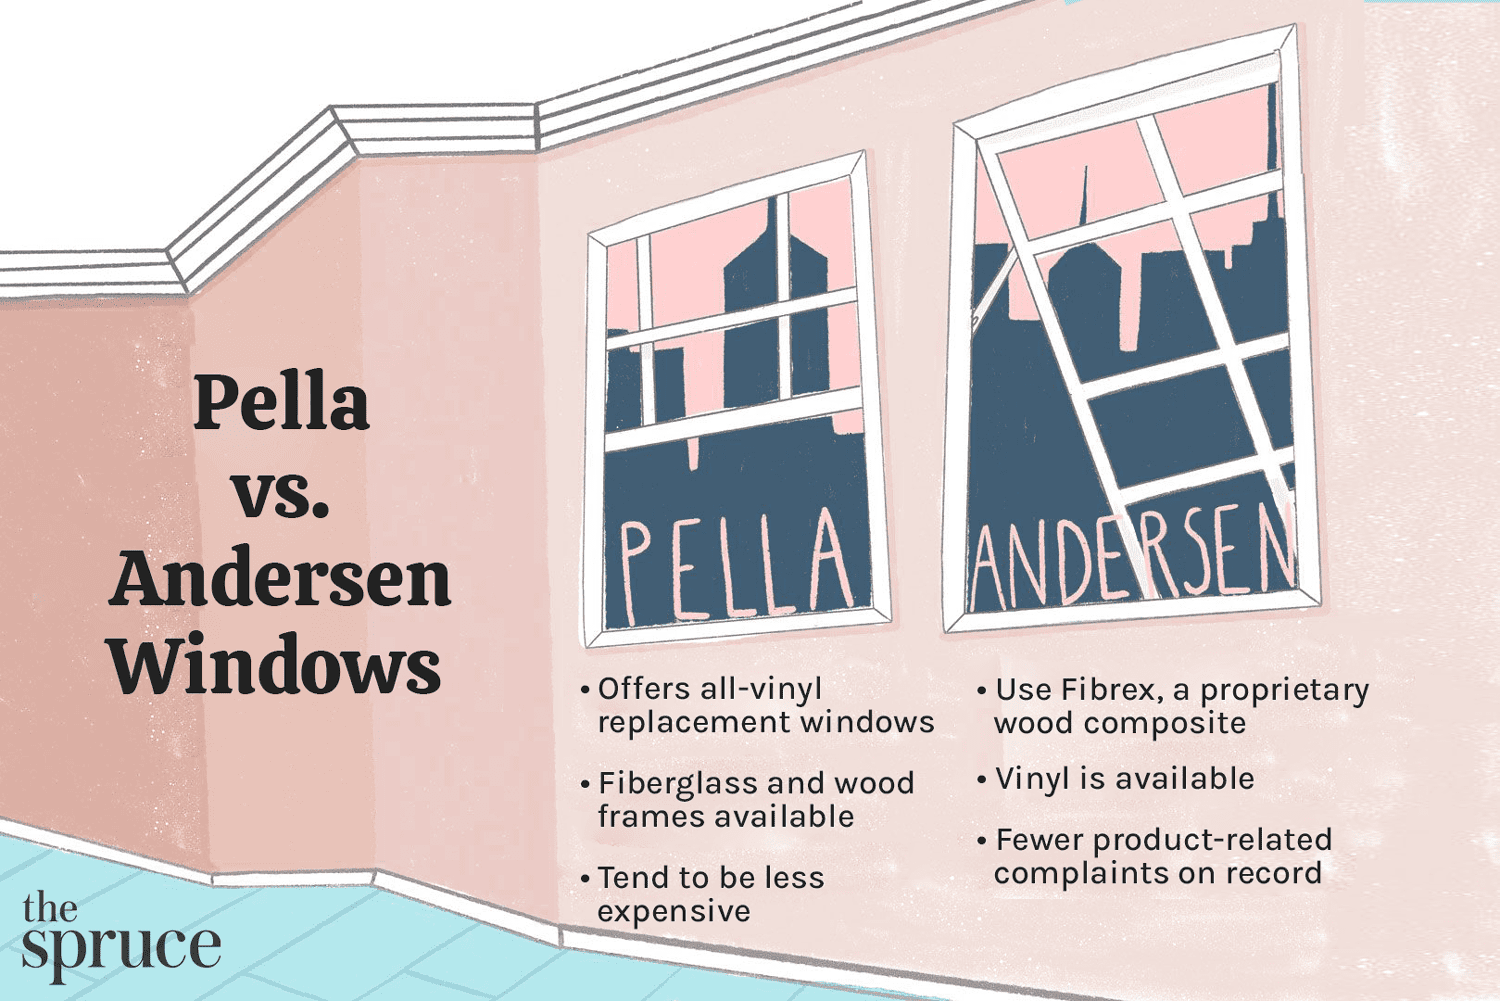 Ilustração mostrando as diferenças entre as janelas Pella e Andersen